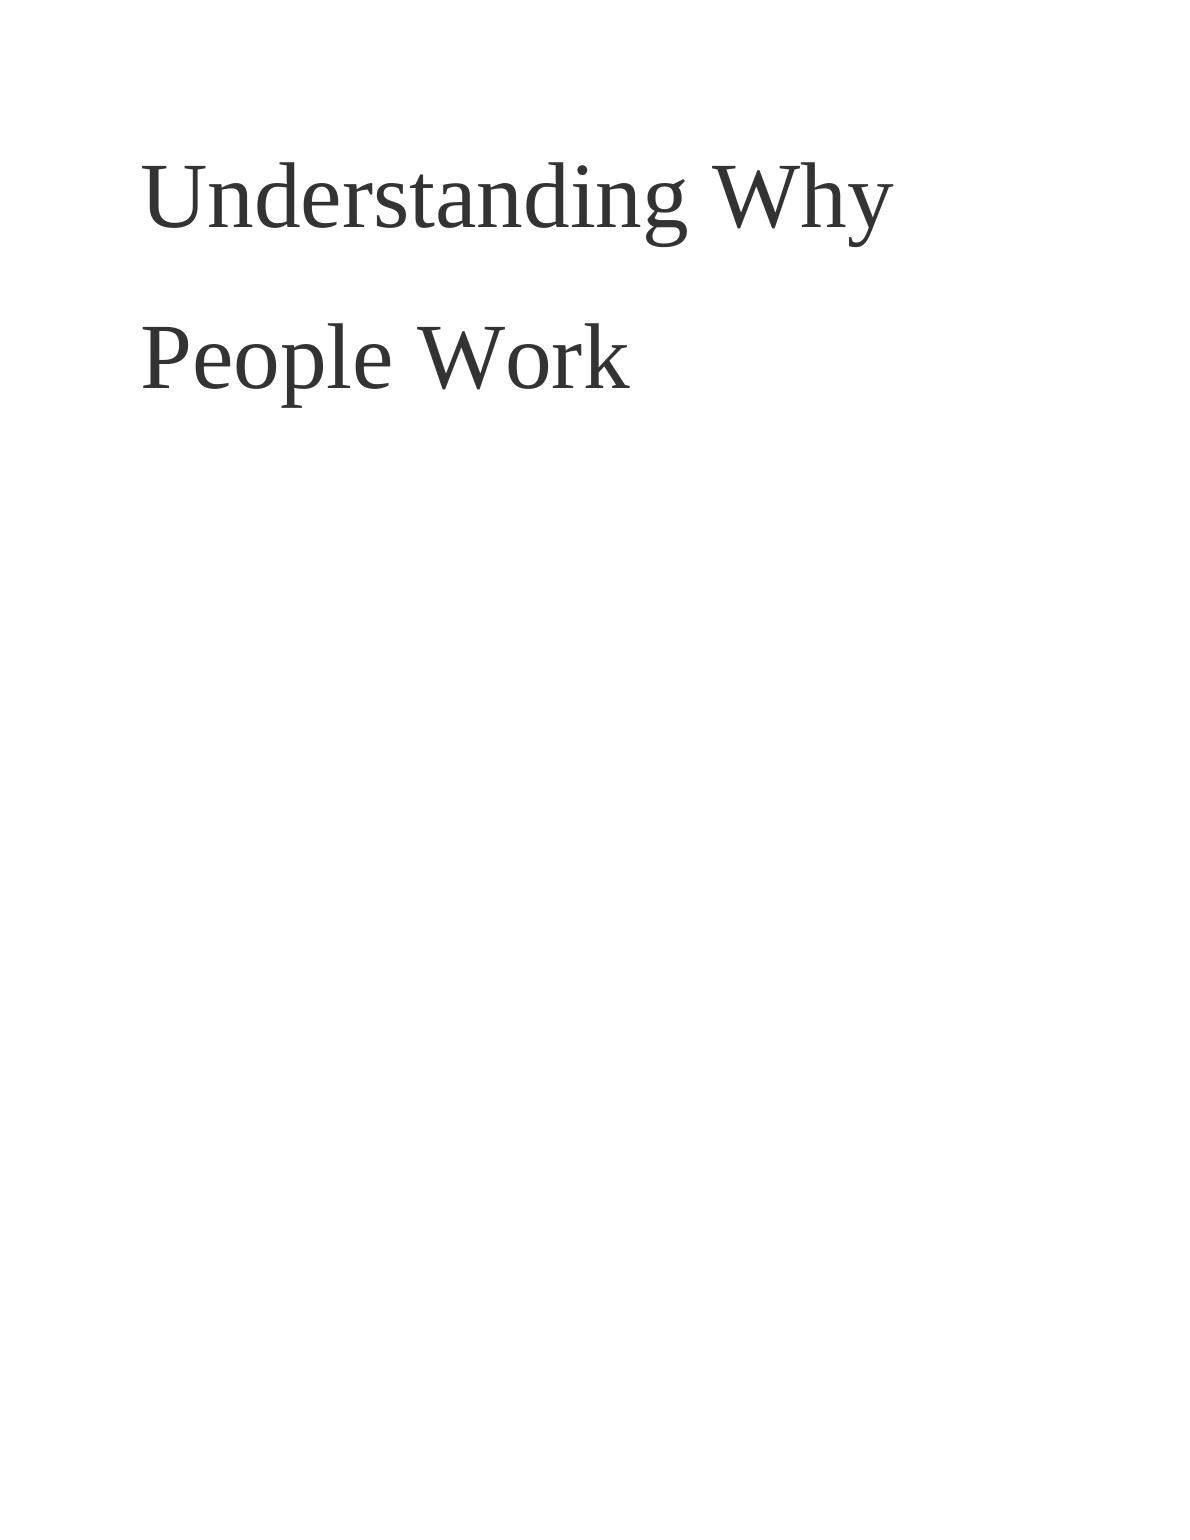 Understanding Why People Work_1